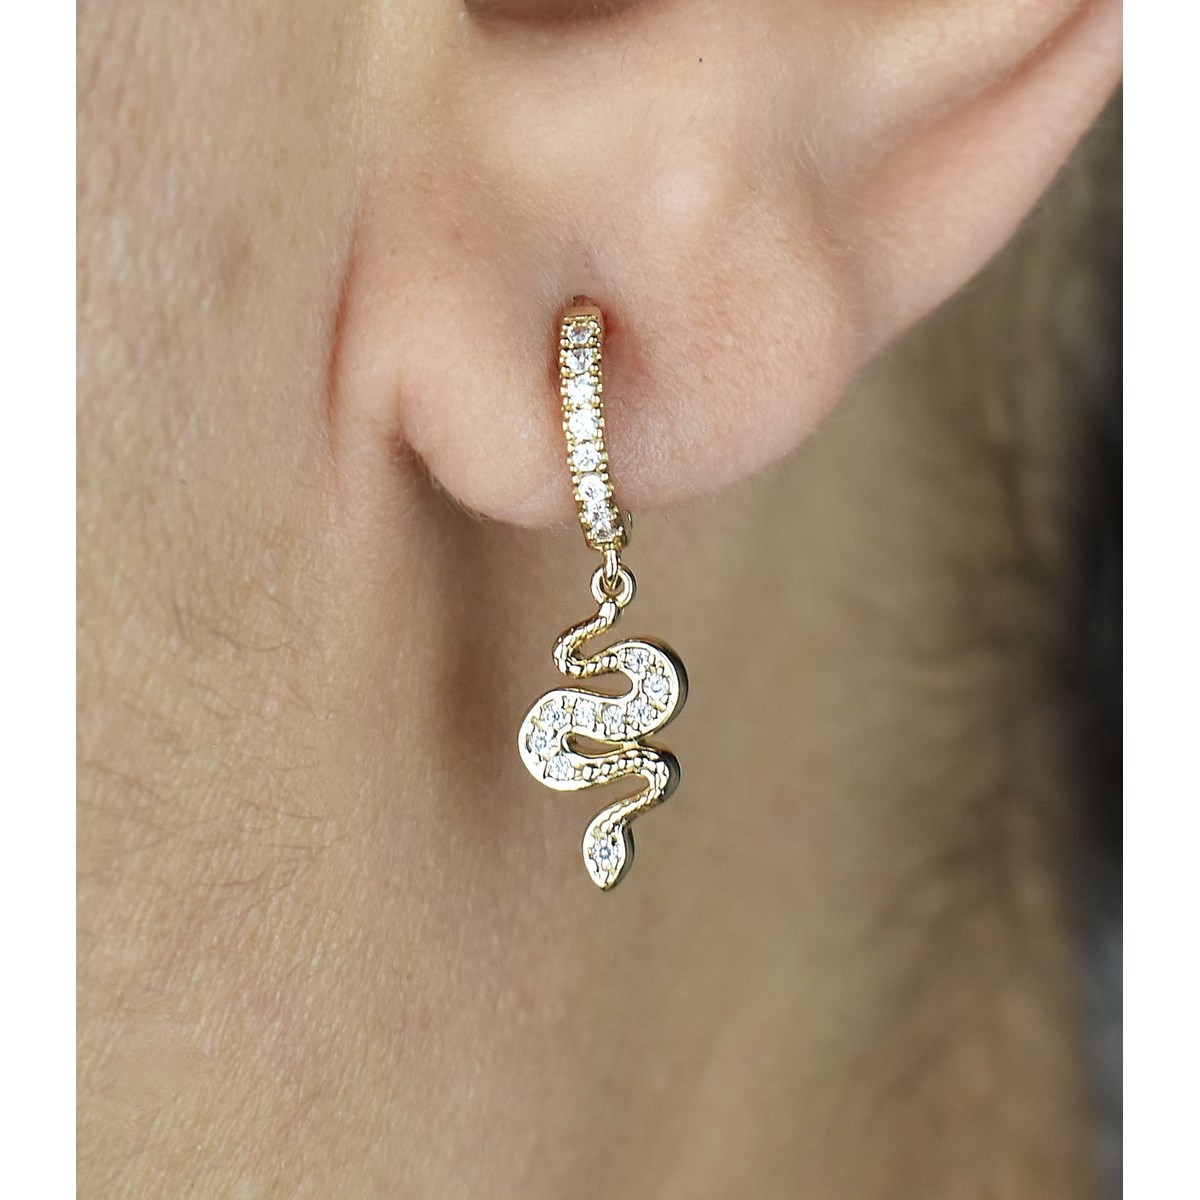 Boucles d'oreilles Mini Créoles serpent pendant serti d'oxydes de zirconium Plaqué or 750 3 microns - vue 2